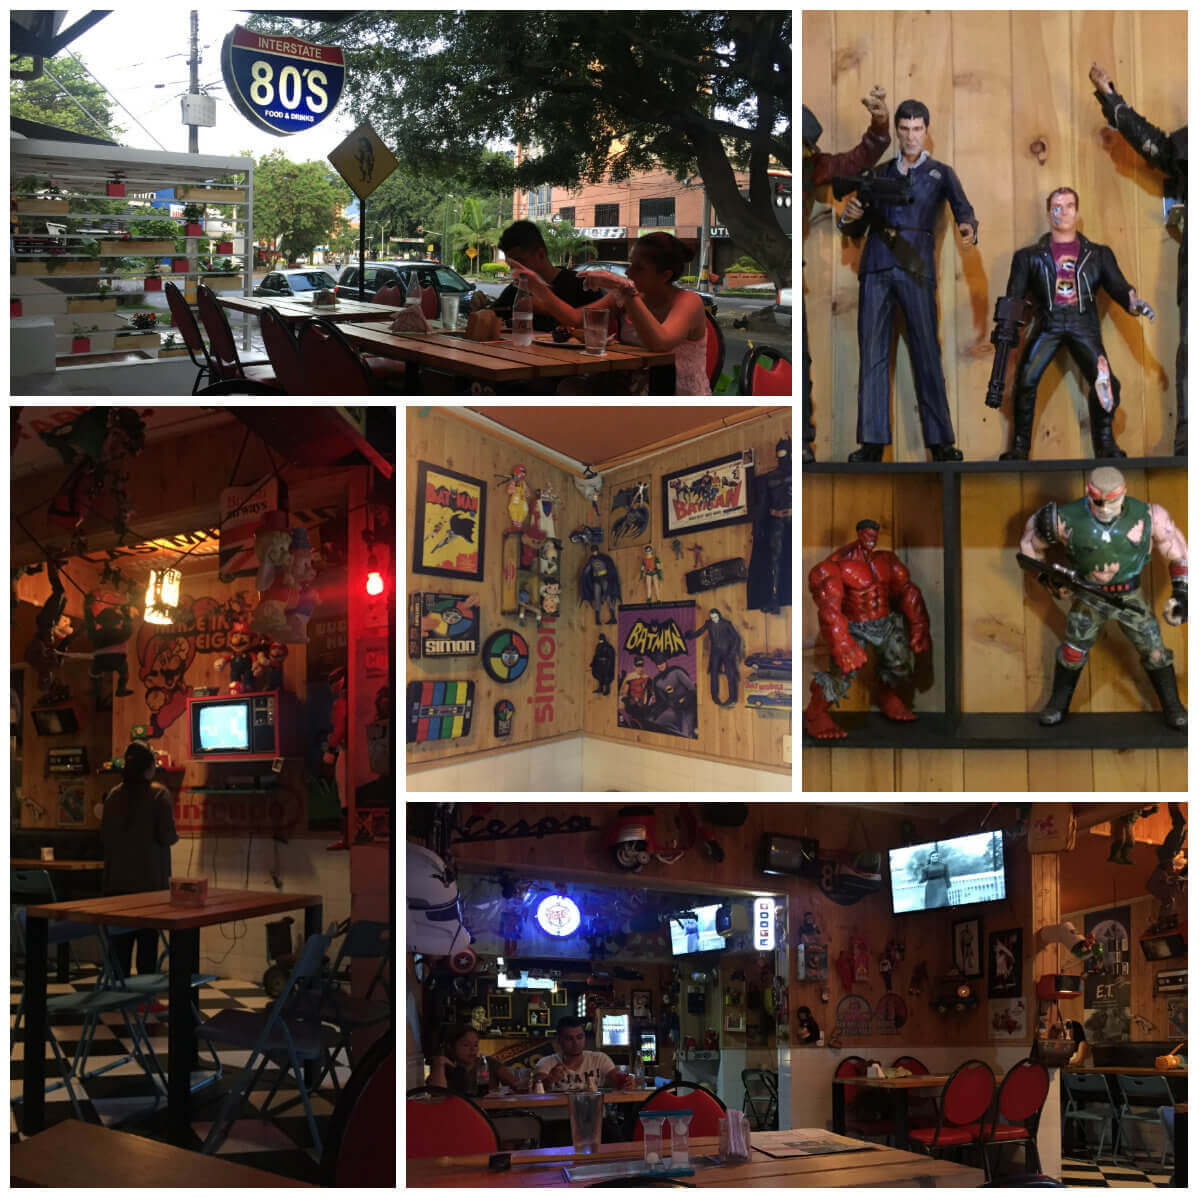 Collage del restaurante Interstate 80's en Laureles - Medellín